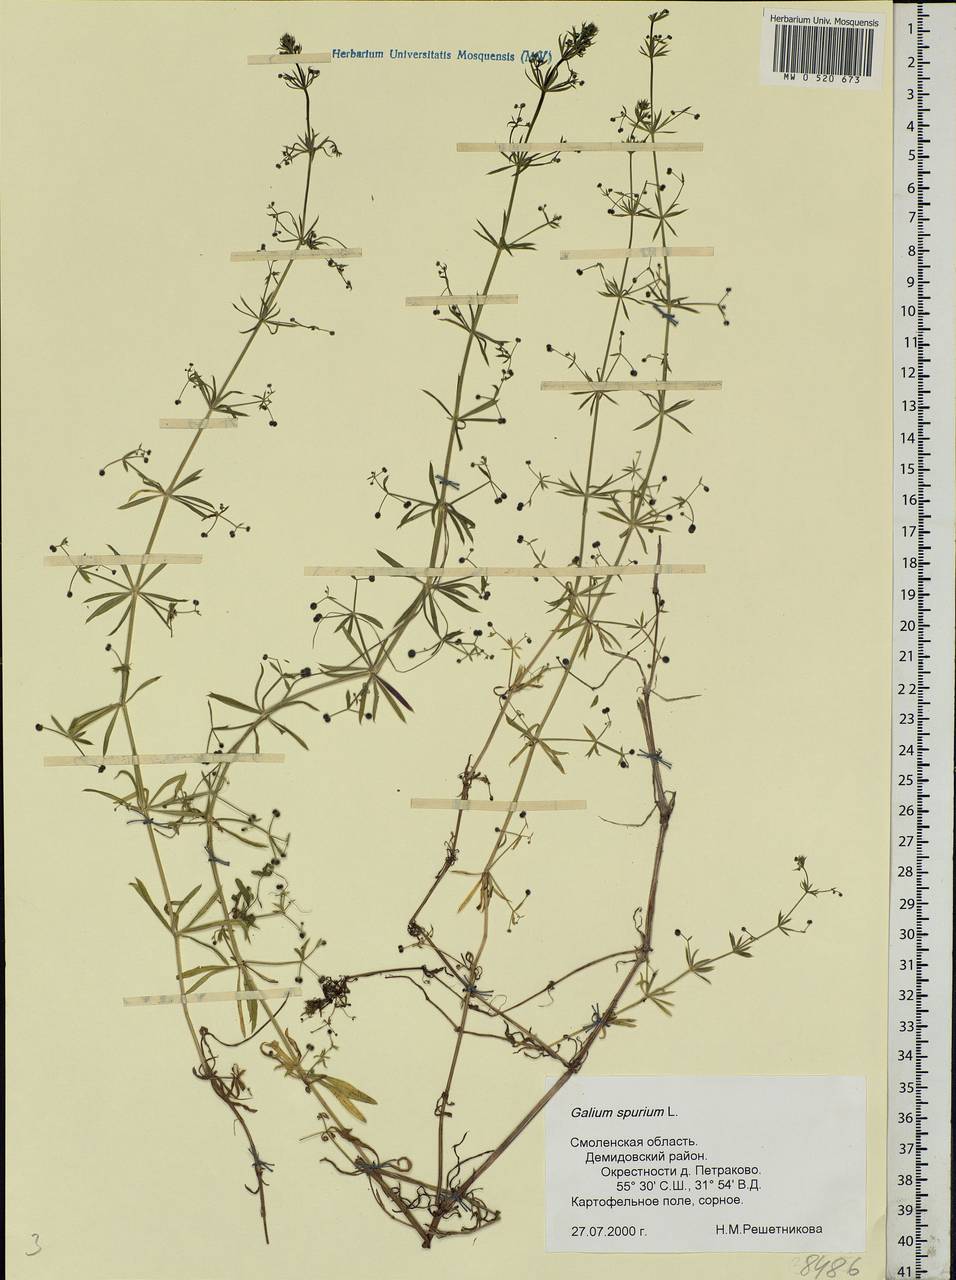 Galium spurium L., Eastern Europe, Western region (E3) (Russia)